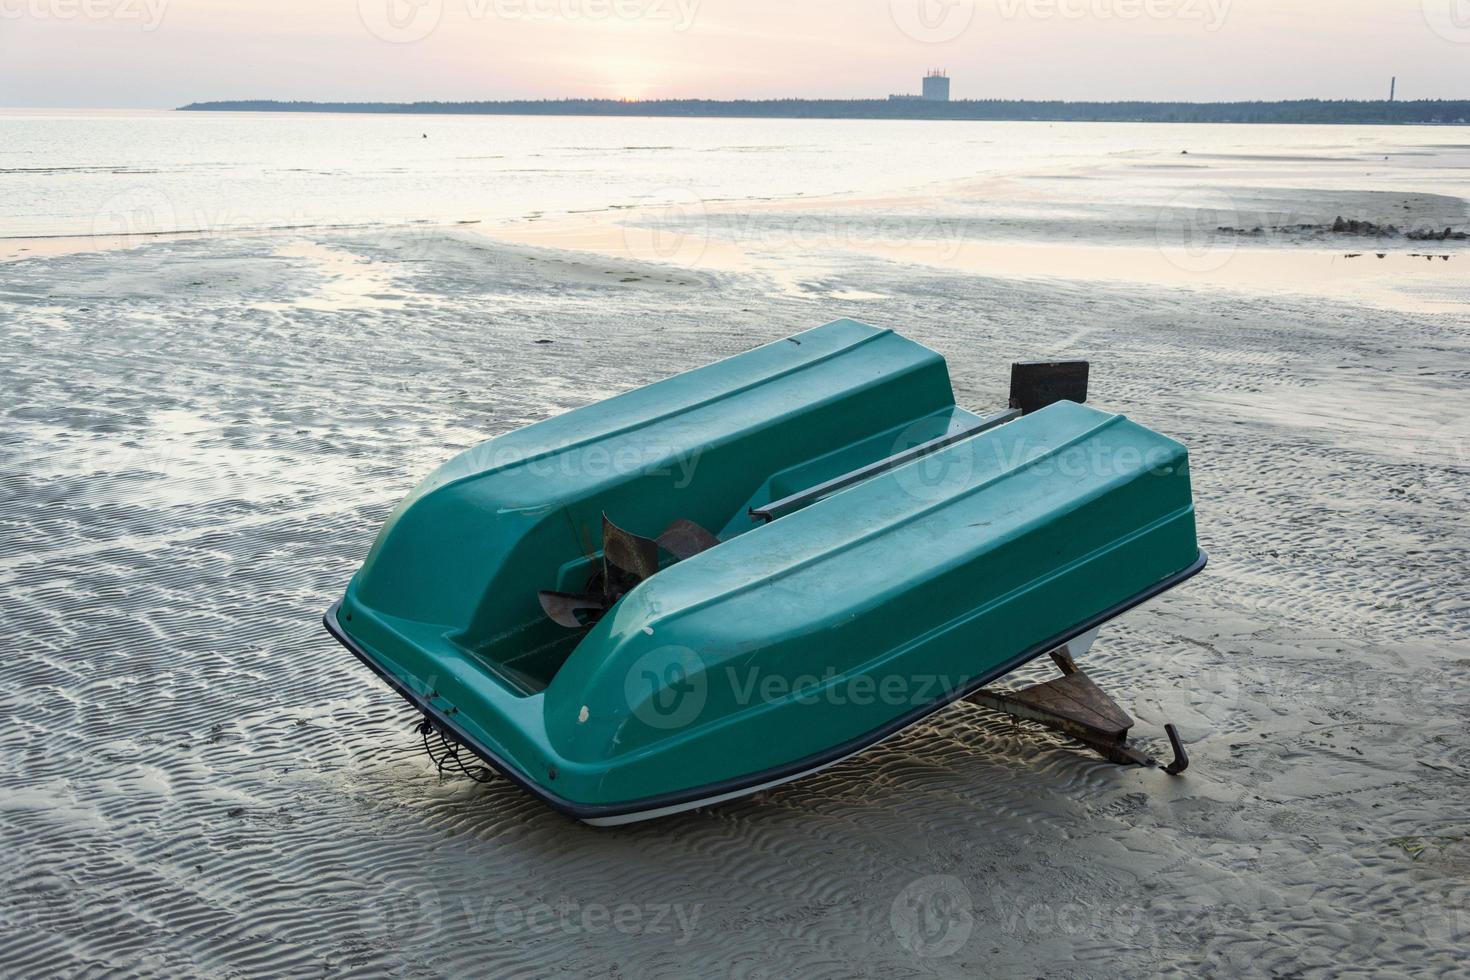 un viejo bote de plástico invertido en la orilla de la bahía del mar, un viejo catamarán, una hélice foto